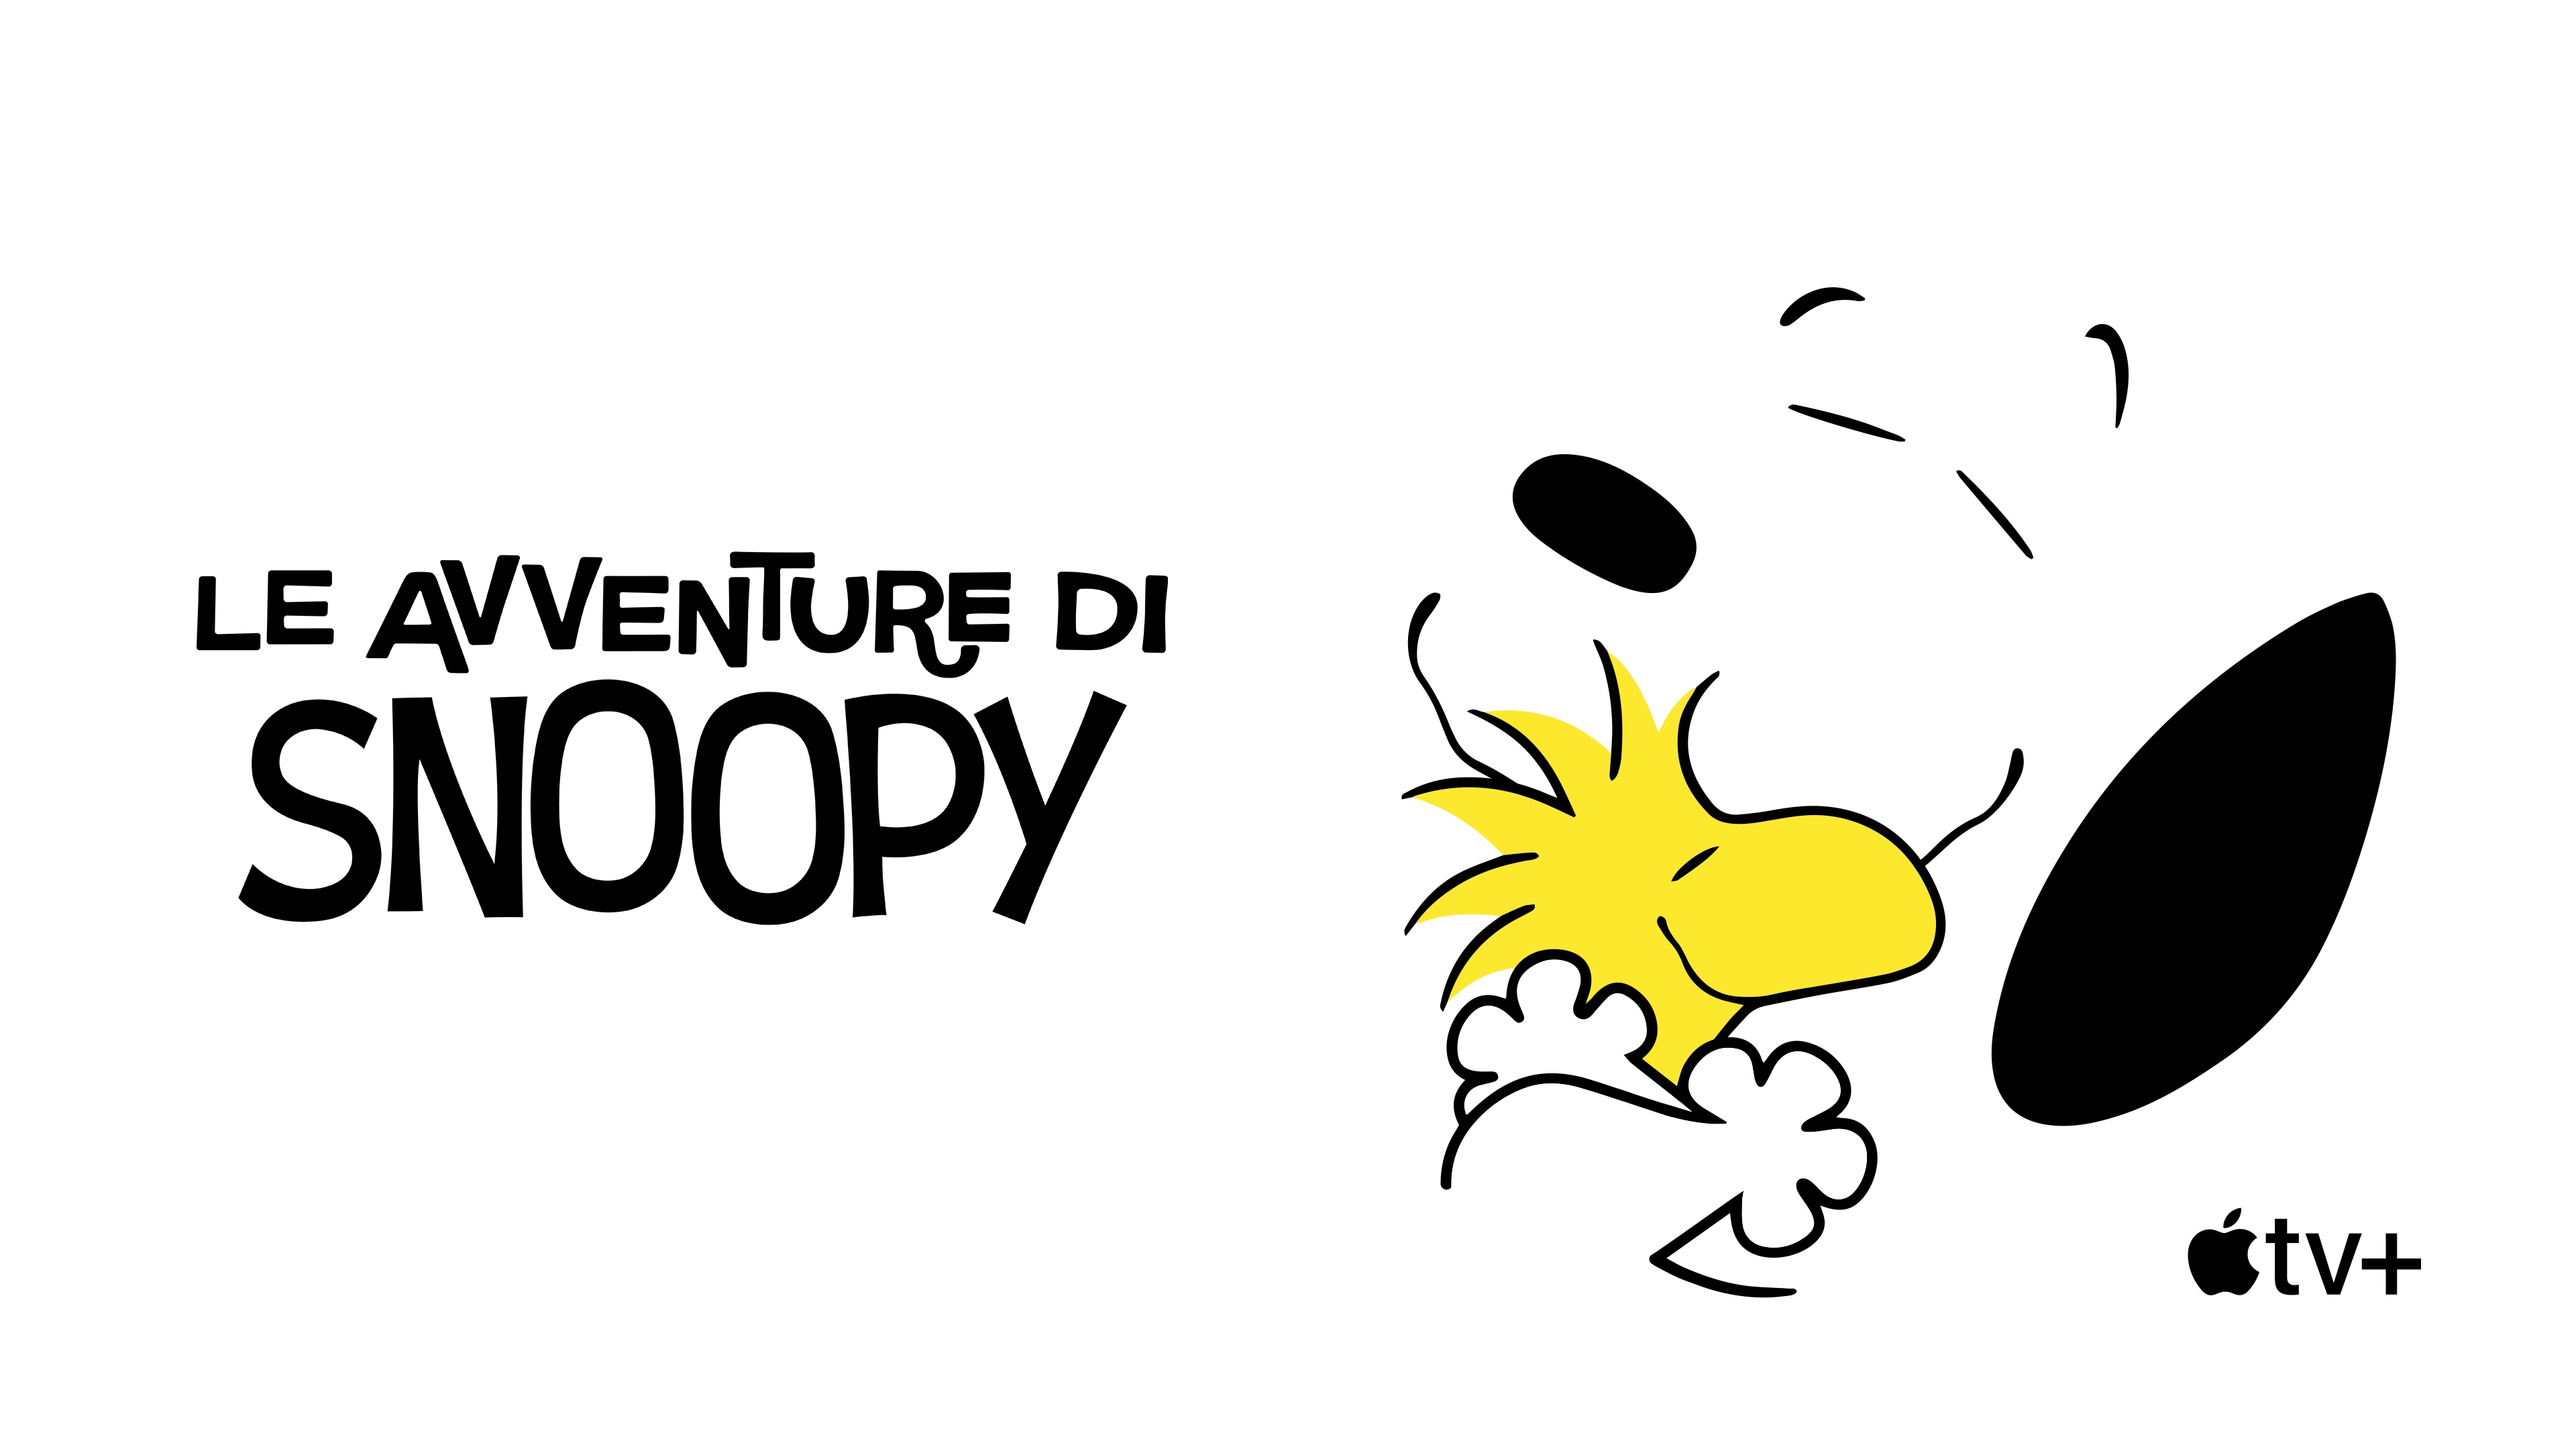 Serie Tv Le avventure di Snoopy, 2° stagione